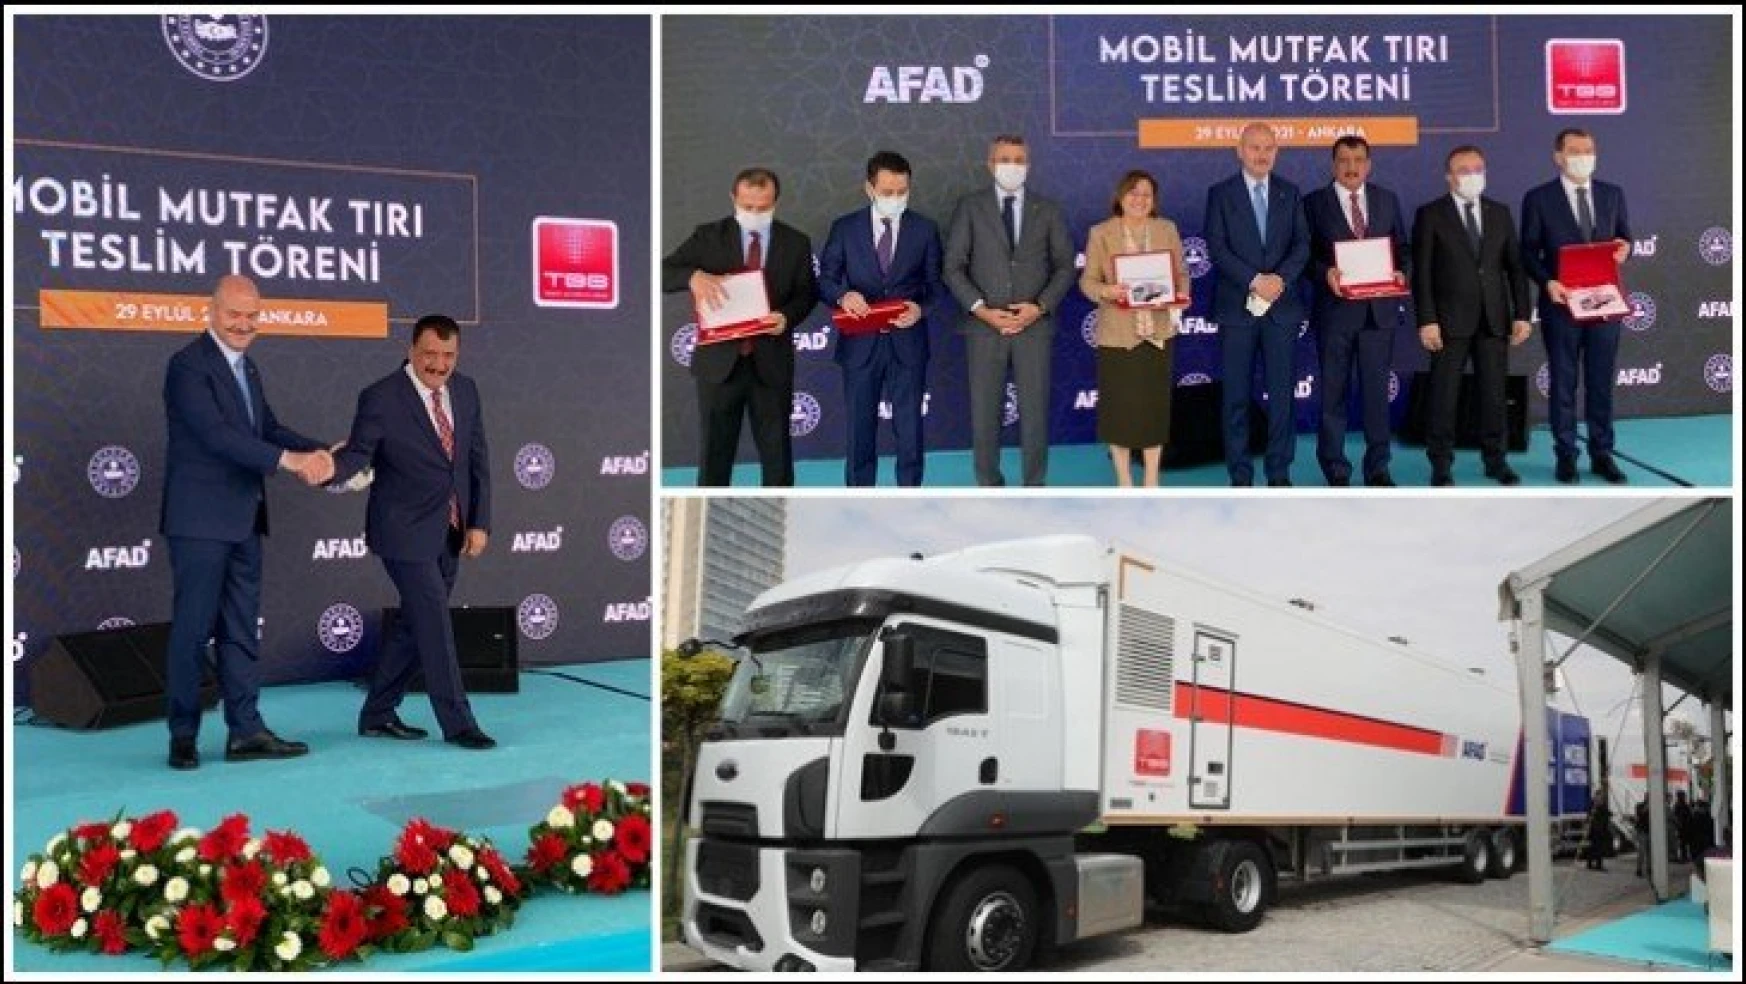 5 Adet Mobil Mutfak Tırından Biri Malatya Büyükşehir Belediyesi'ne Verildi